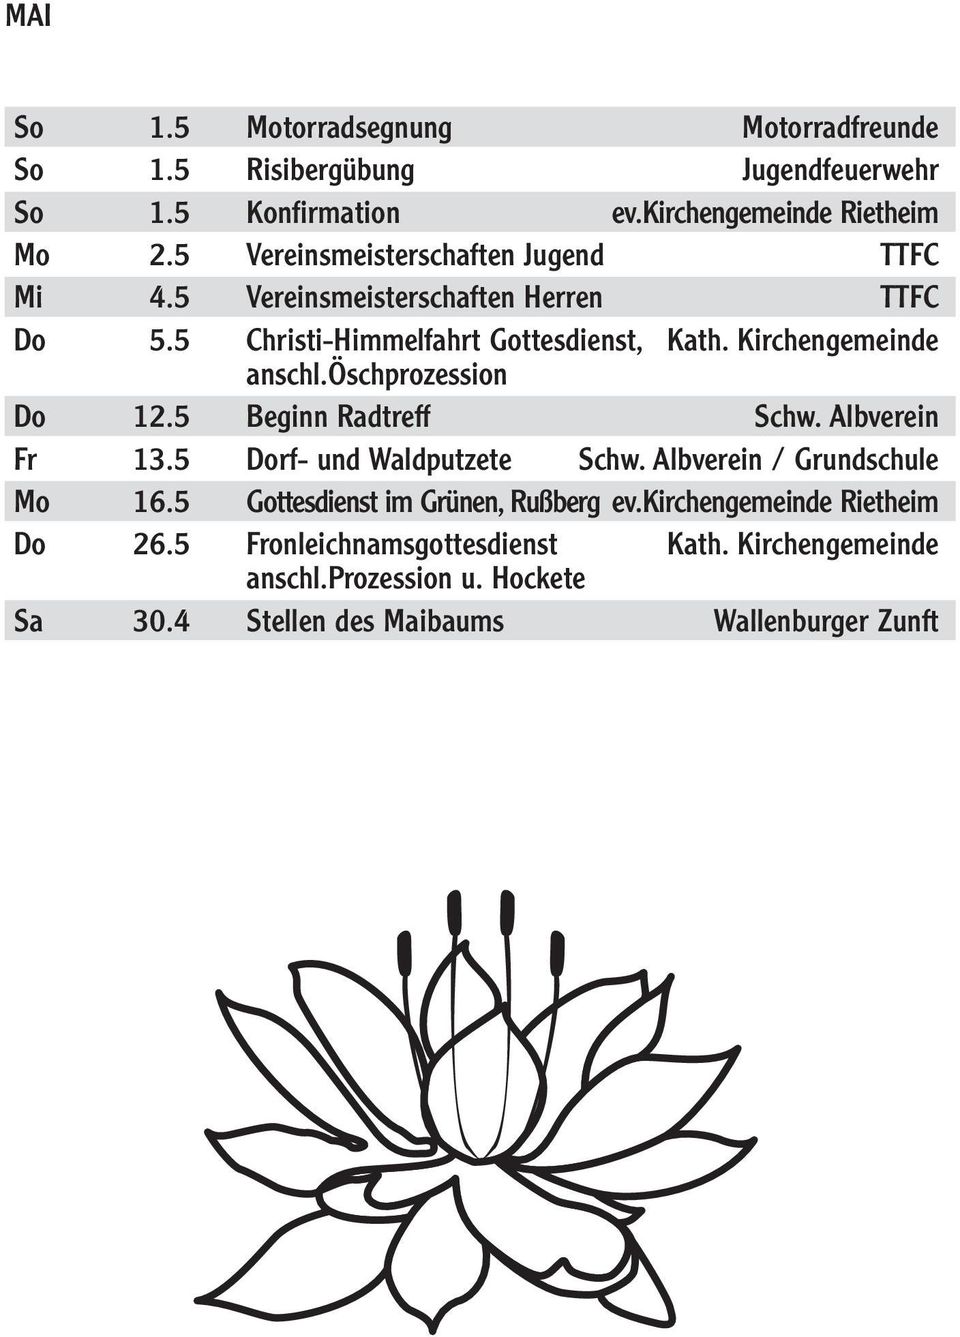 öschprozession Do 12.5 Beginn Radtreff Schw. Albverein Fr 13.5 Dorf- und Waldputzete Schw. Albverein / Grundschule Mo 16.